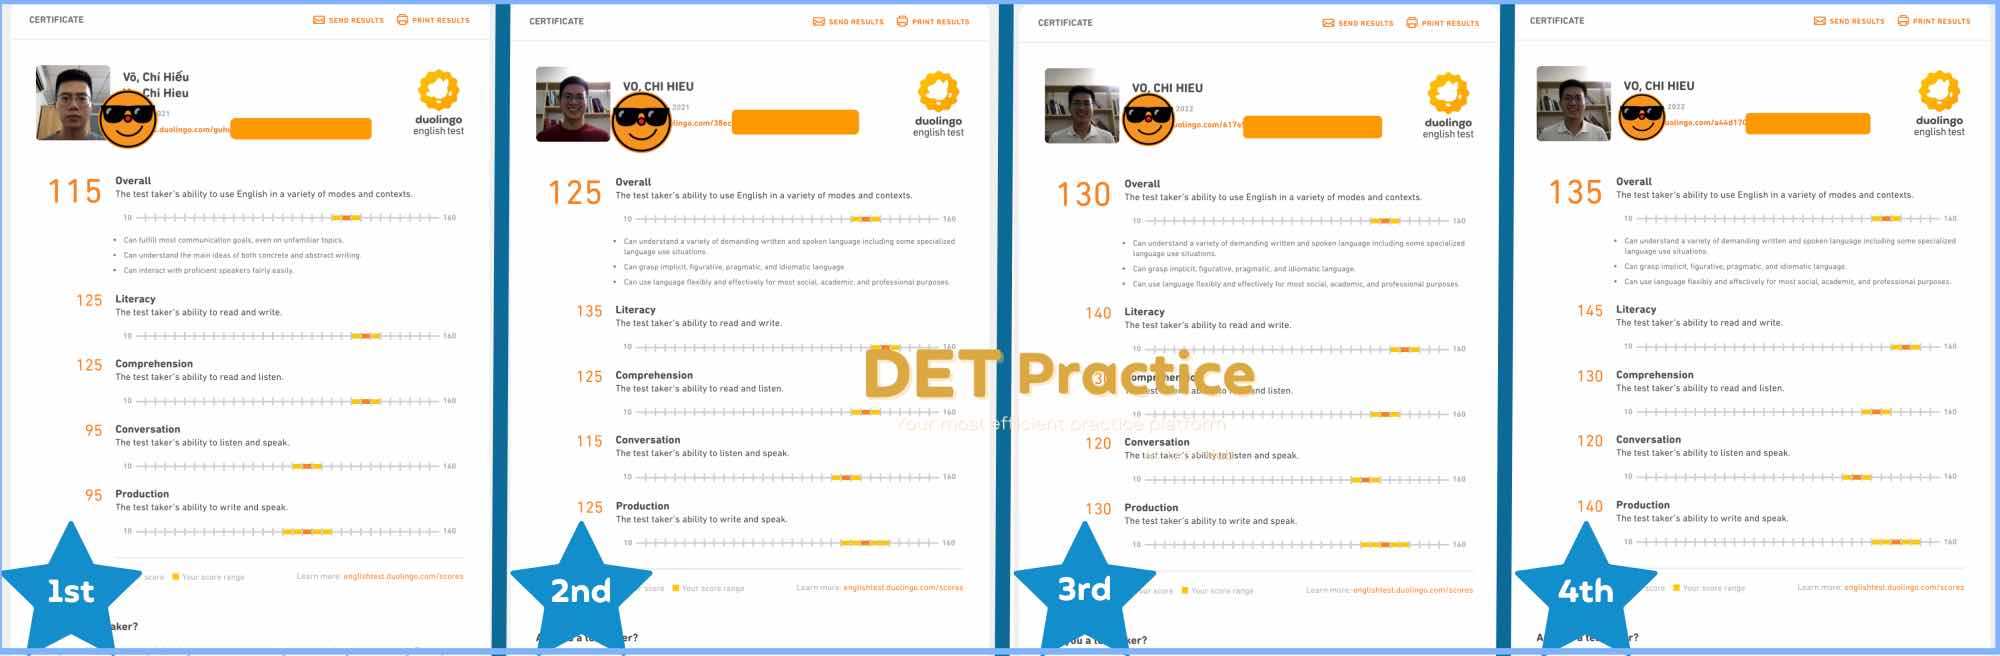 Improve duolingo english test scores, English test platform, improve your English, IELTS writing skills, Duolingo Test preparation